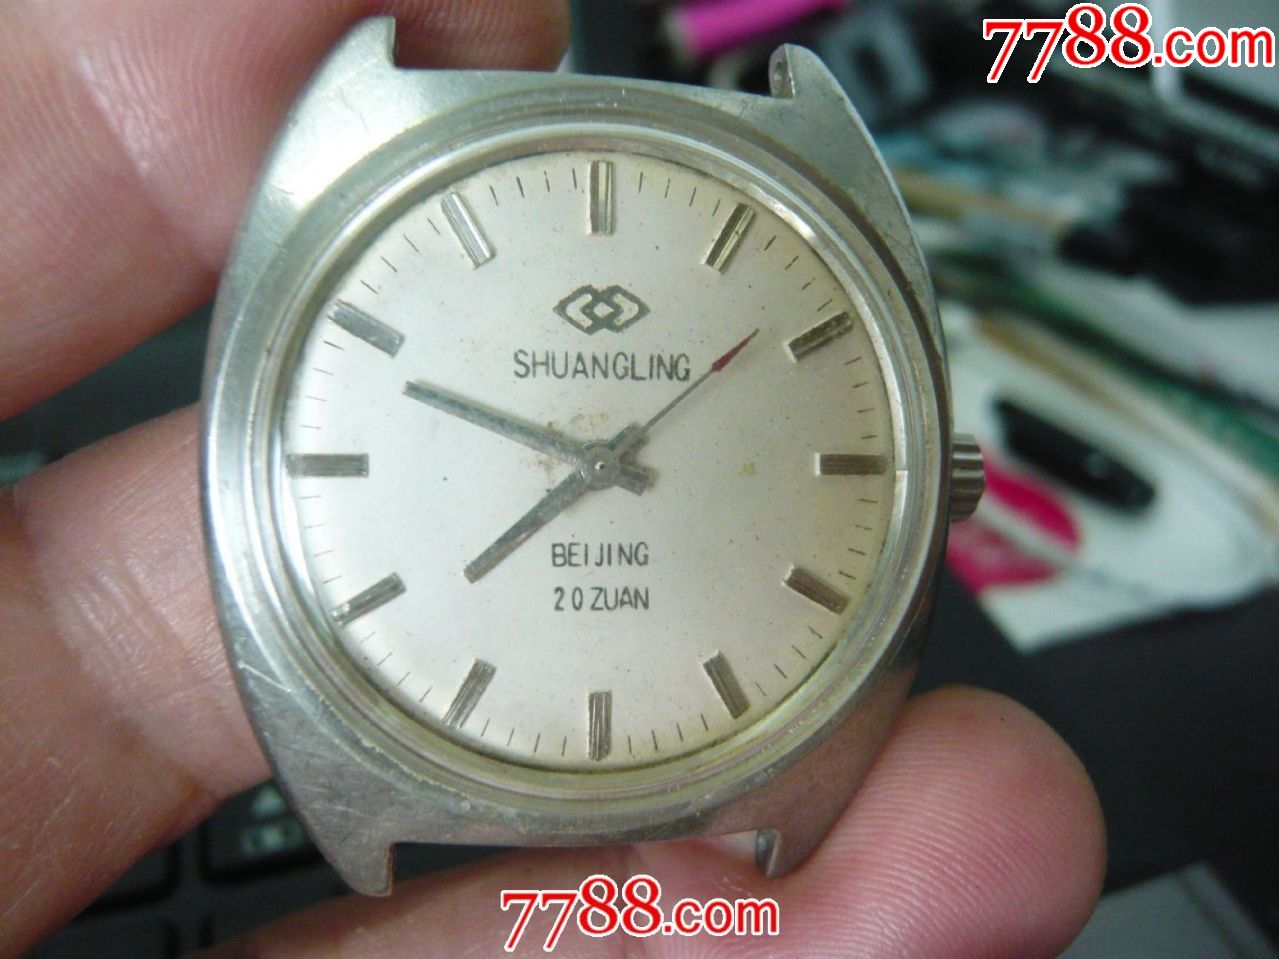 囯产20占北京"双菱"机械大表-手表/腕表-7788收藏